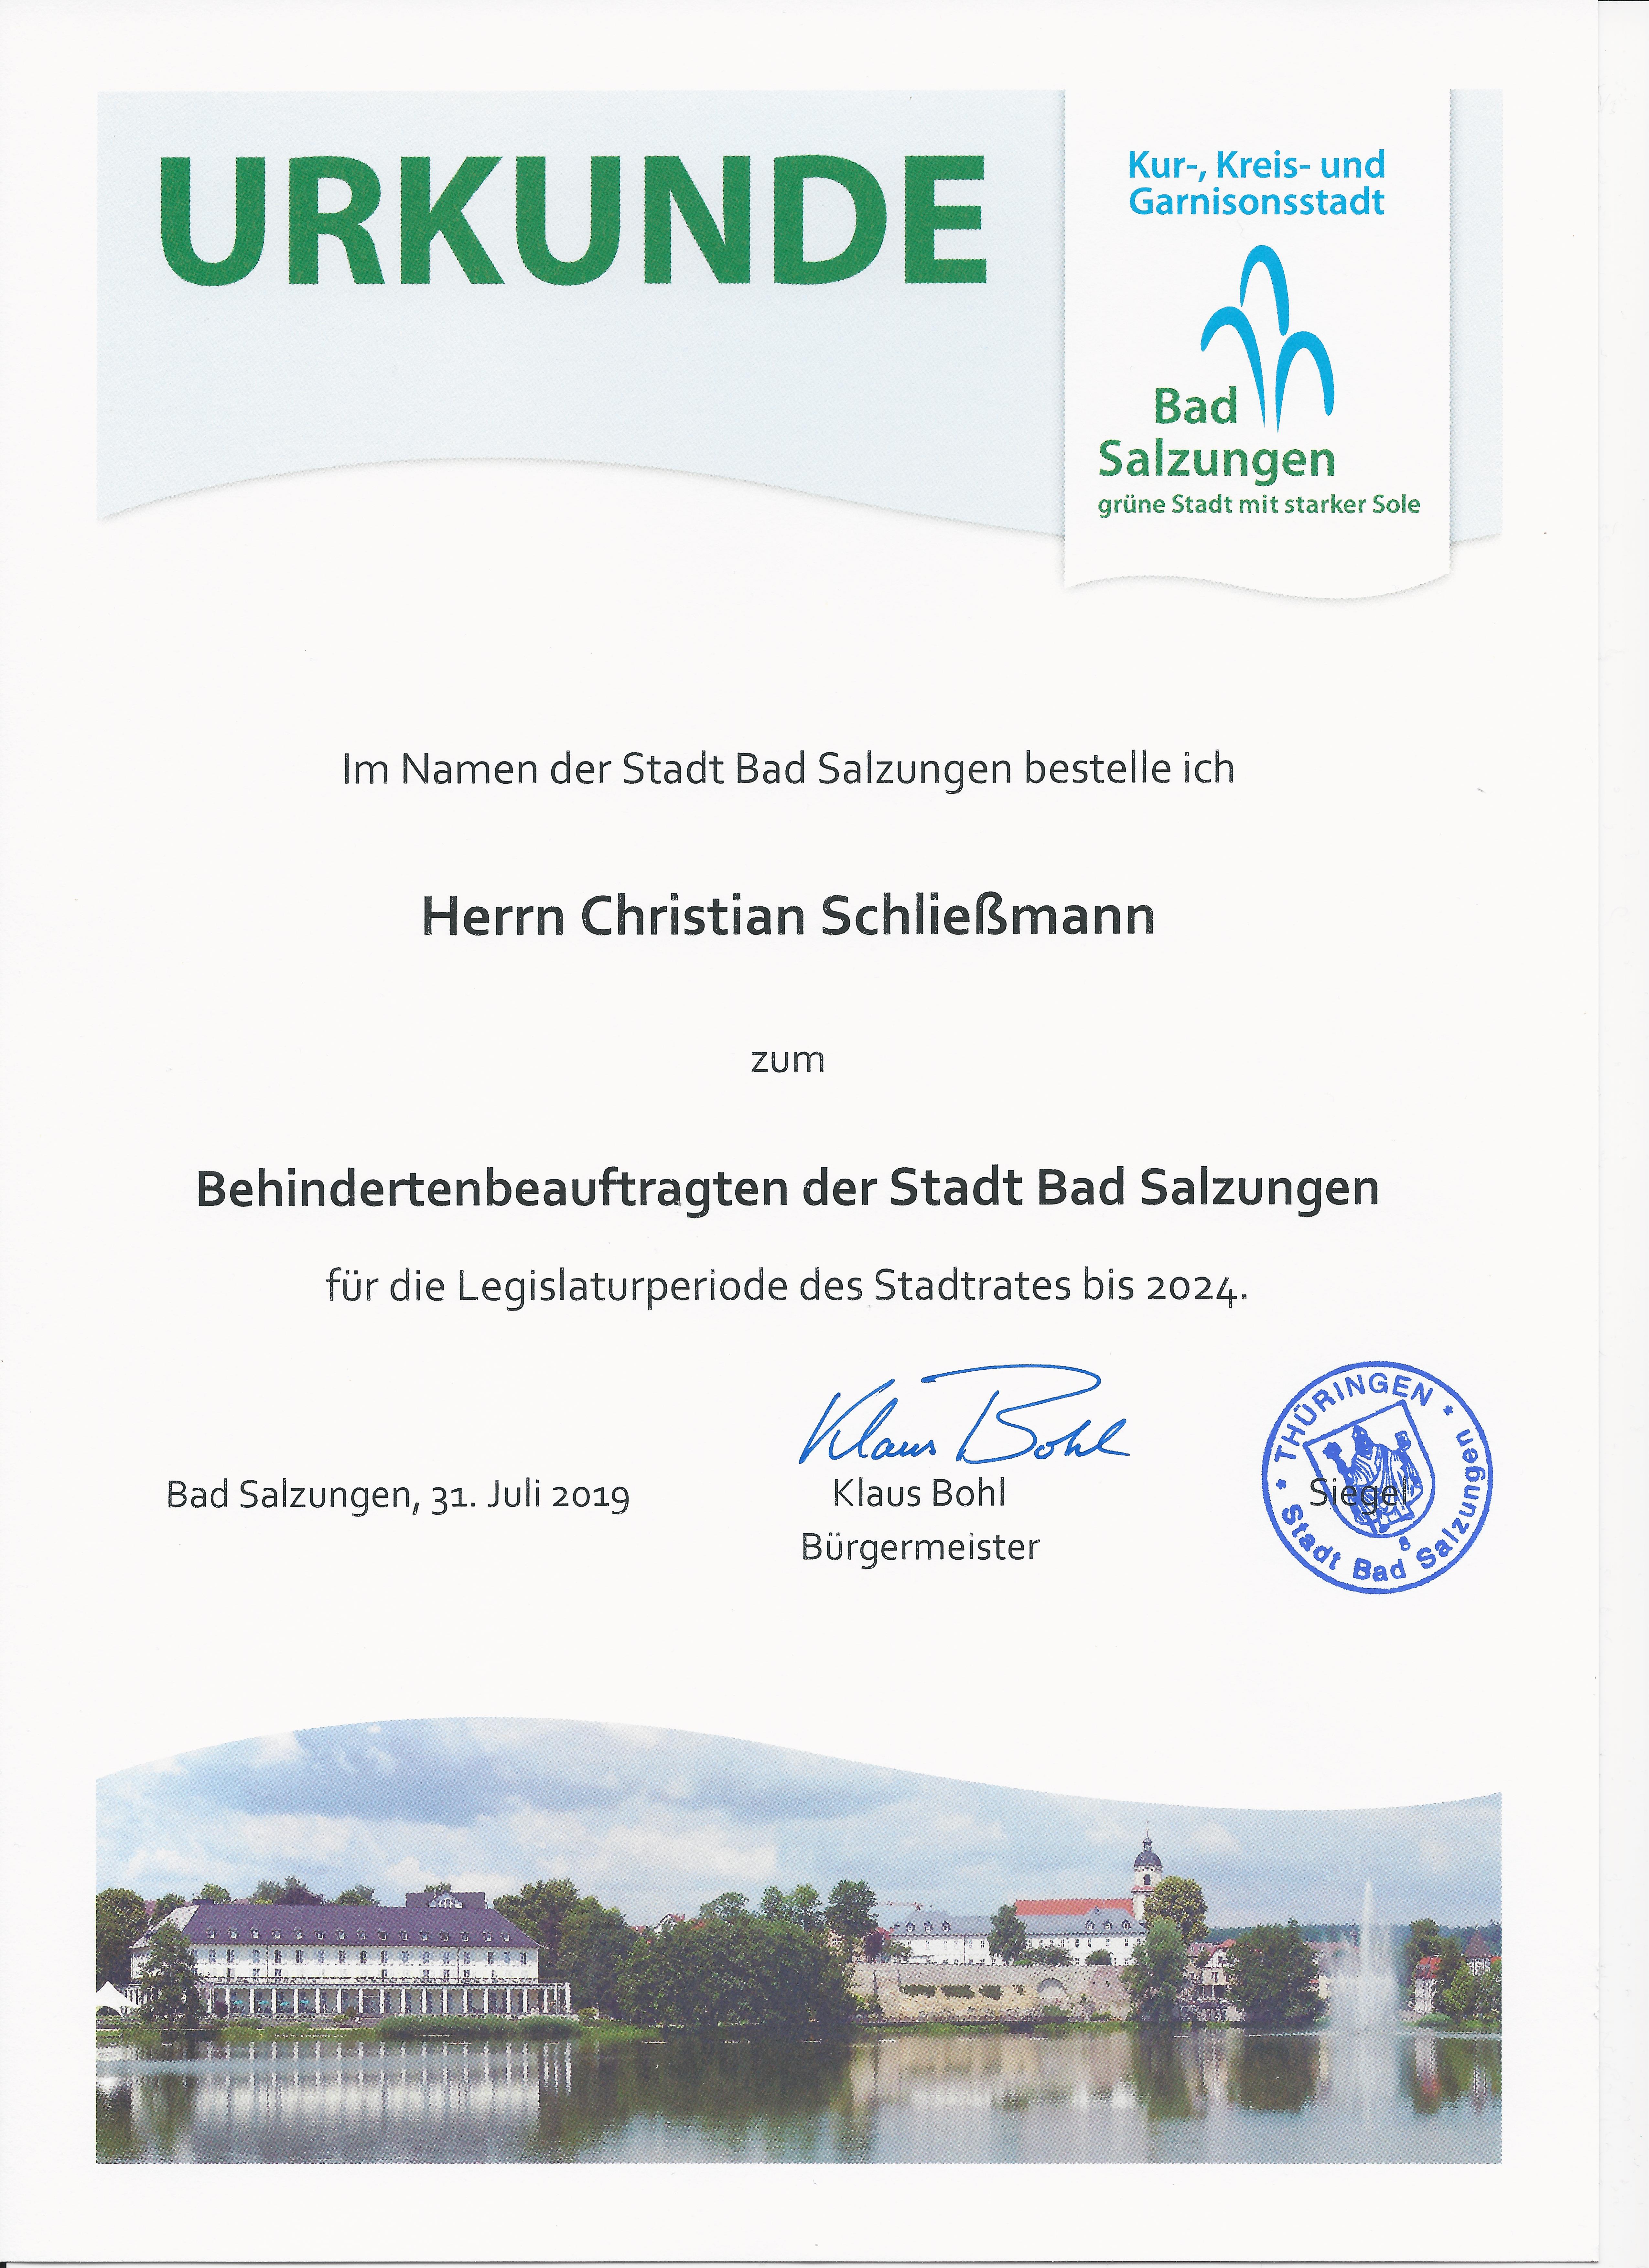 Schließmann wieder zum Behindertenbeauftragten der Stadt Bad Salzungen gewählt